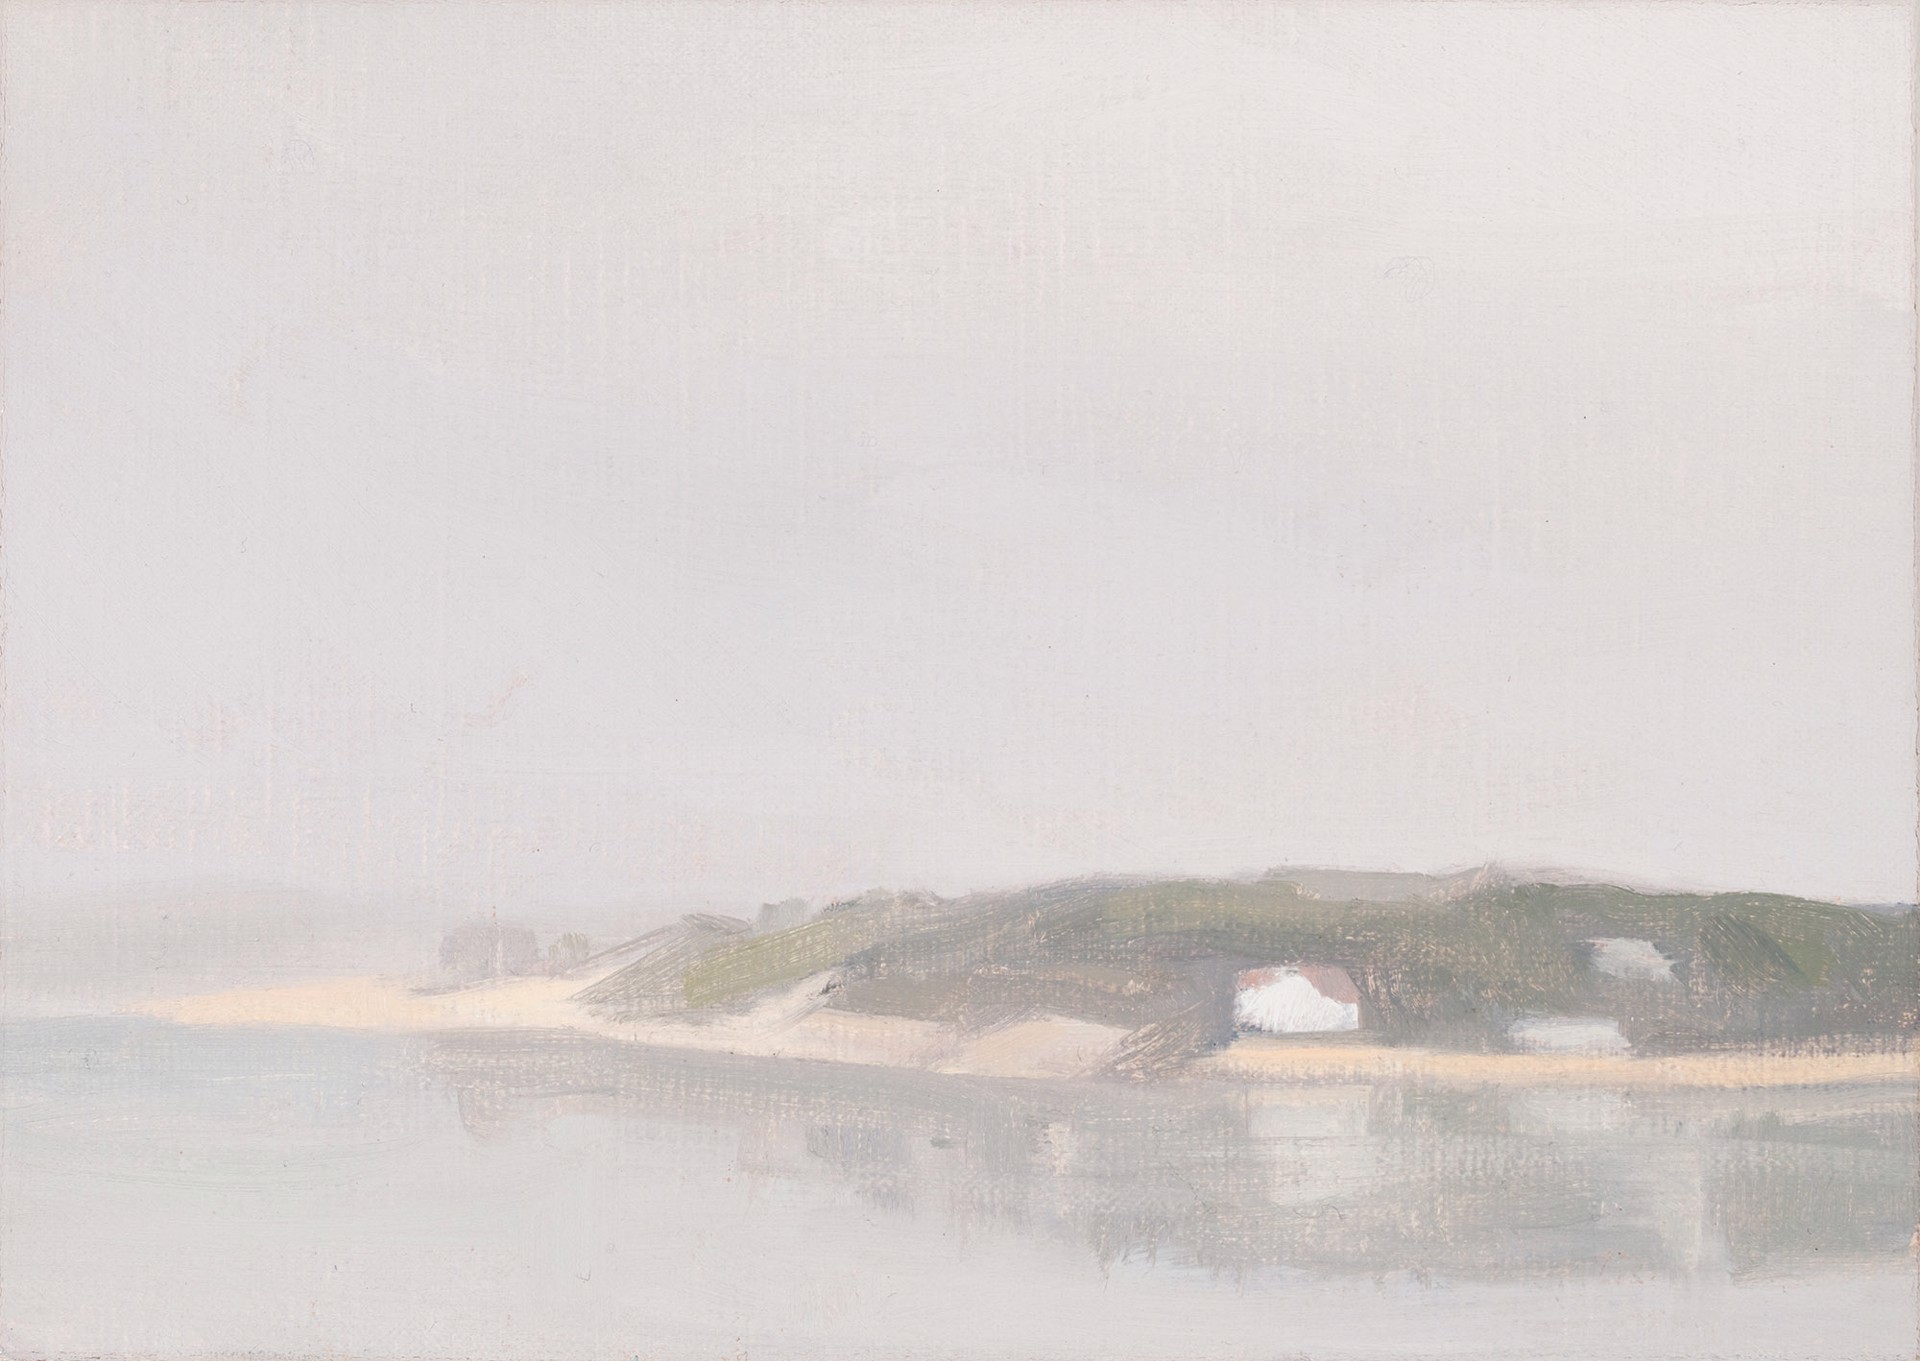 Loagy Bay, Foggy by Diana Horowitz